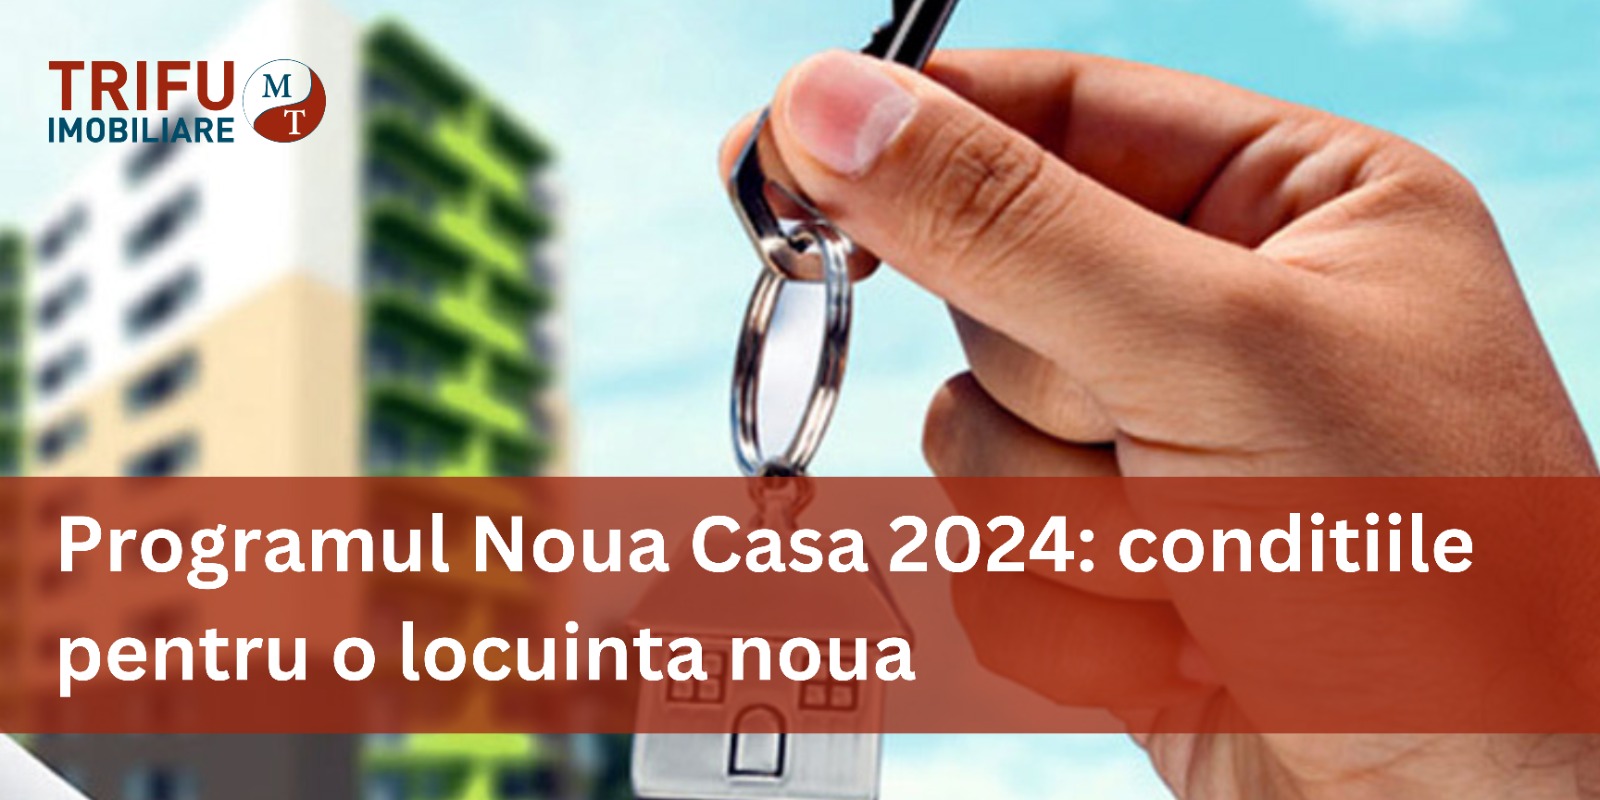 Programul Noua Casa 2024 - Avantajele si conditiile pentru o locuinta noua